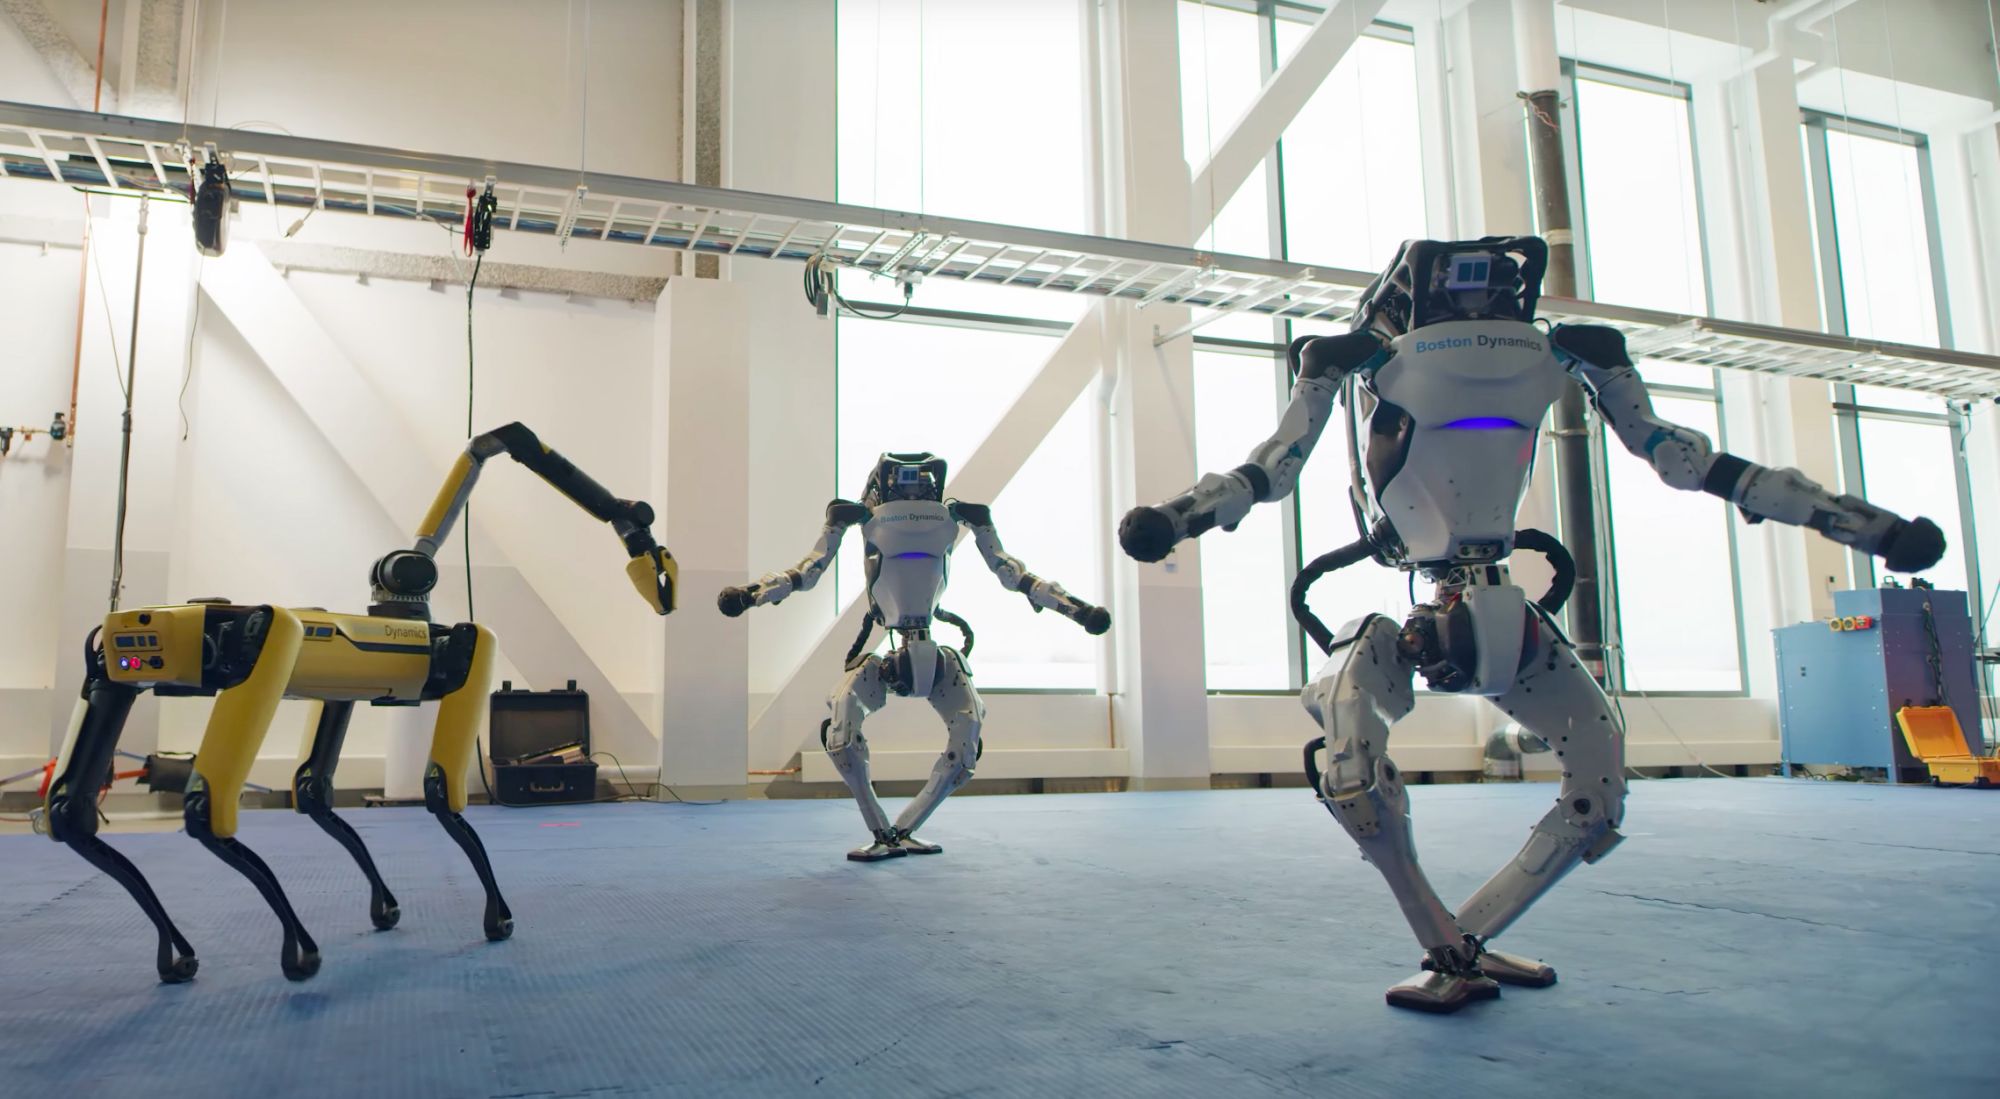 Boston Dynamics, ANYbotics, Agility Robotics i inne firmy obiecują, że nie wyposażą swoich robotów w broń